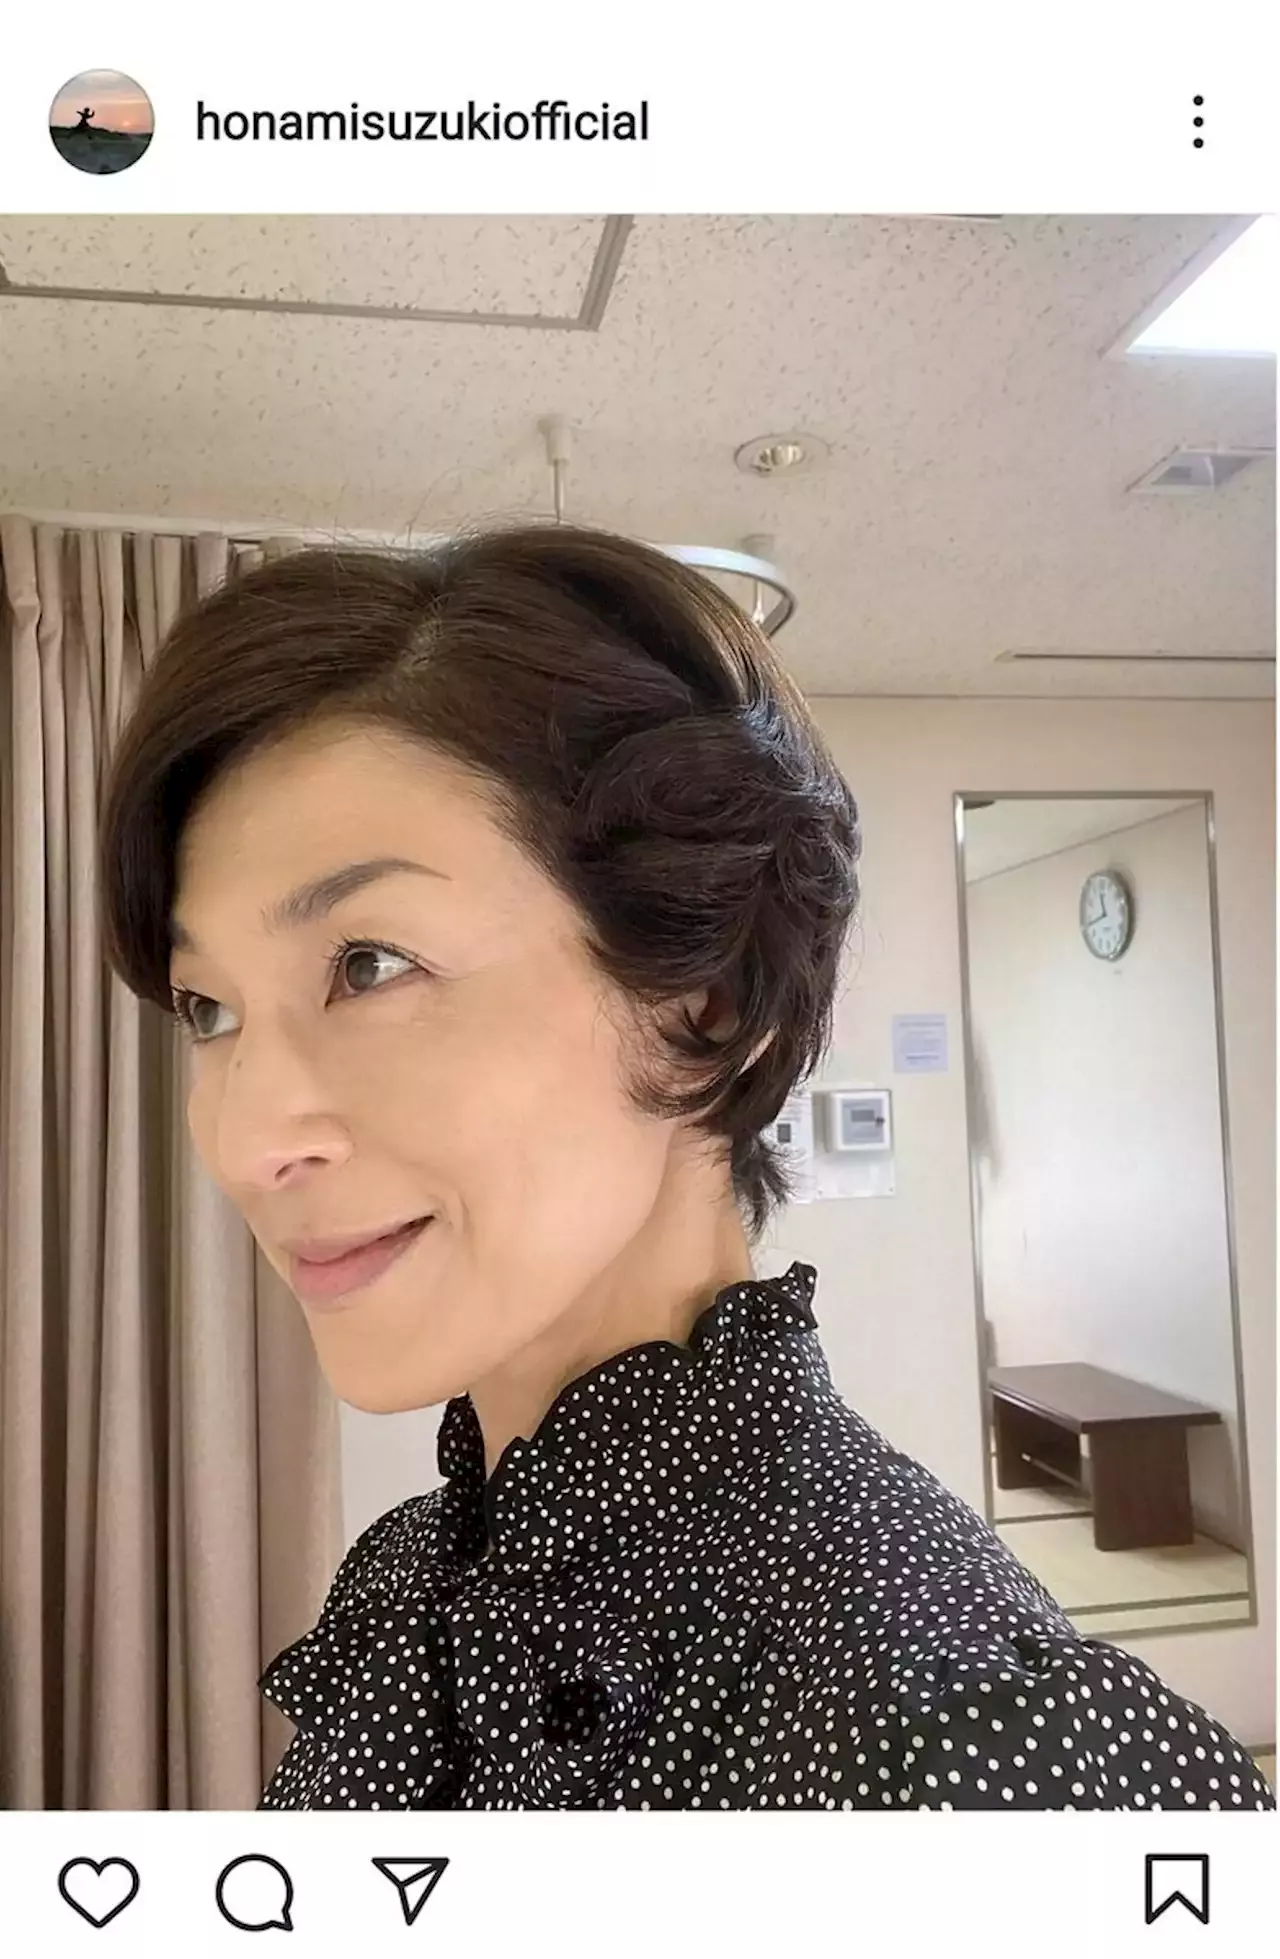 ちむどんどん 出演の鈴木保奈美 和彦の母 スタイルで おほほほ と怖い 笑顔 芸能ニュース ニュース